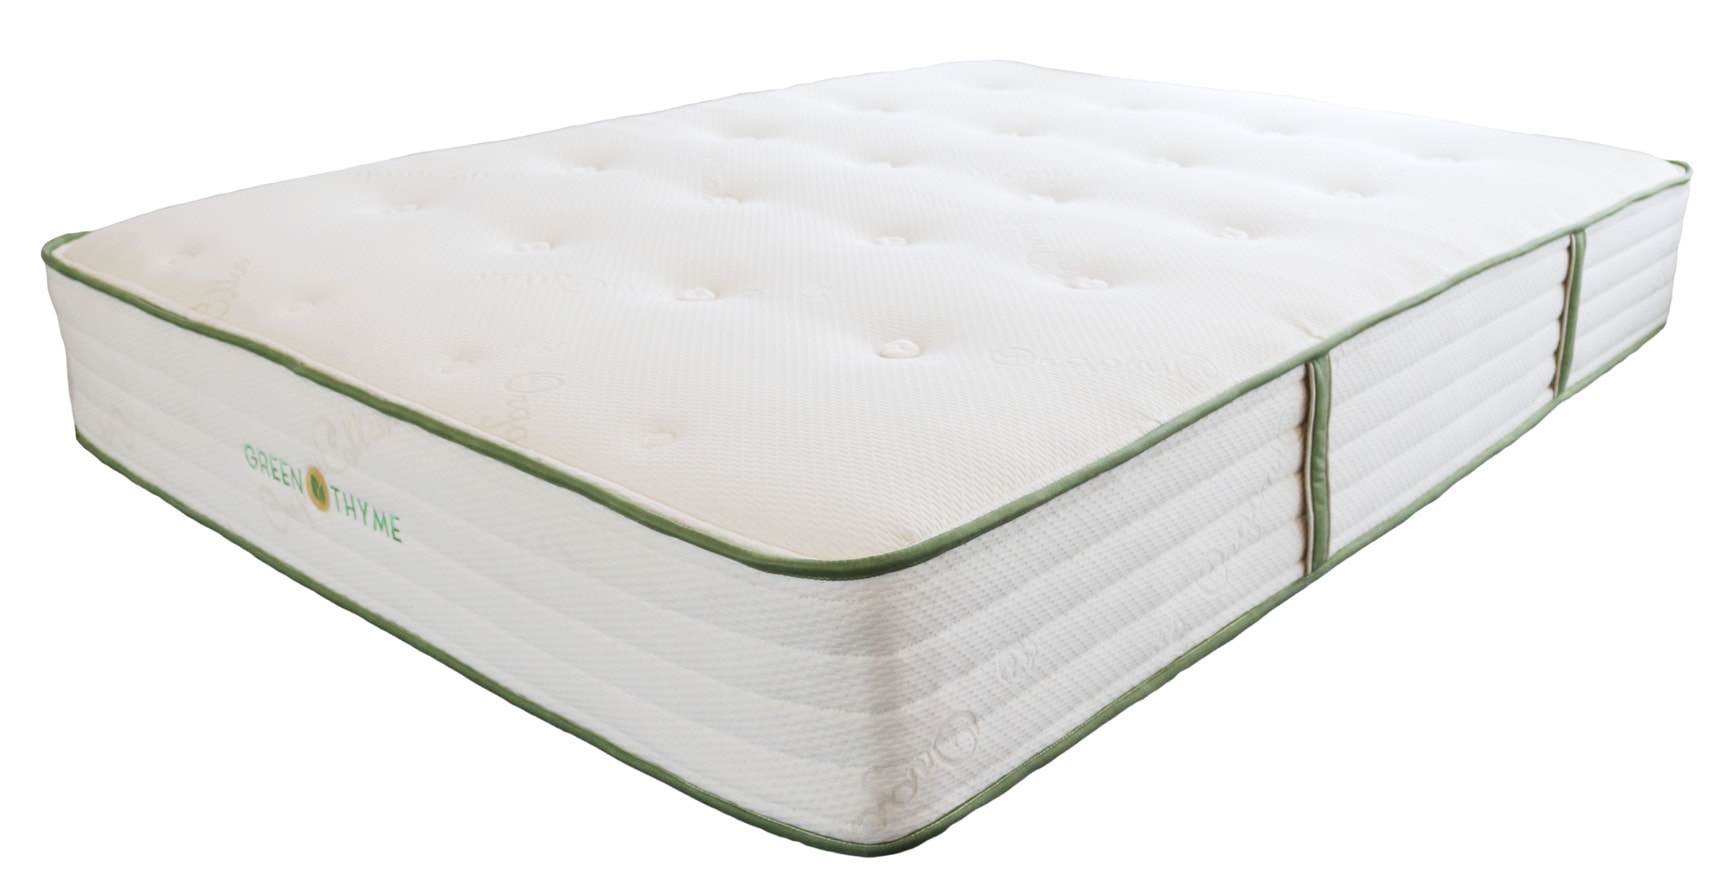 green thyme mattress review